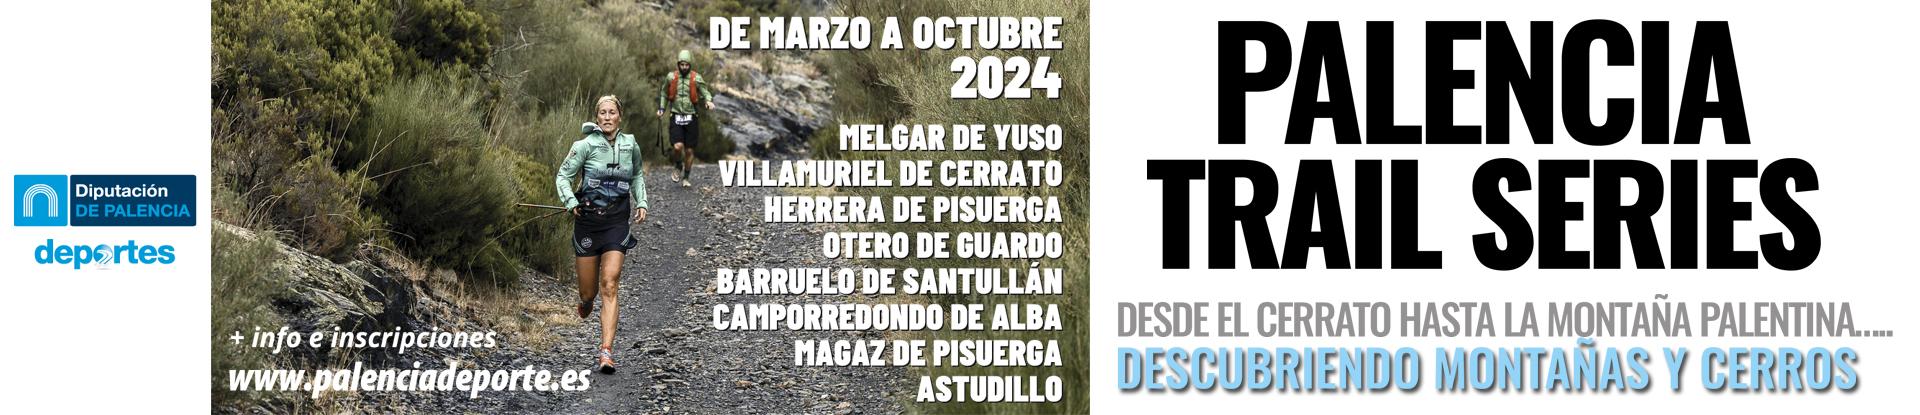 Palencia Trail Series